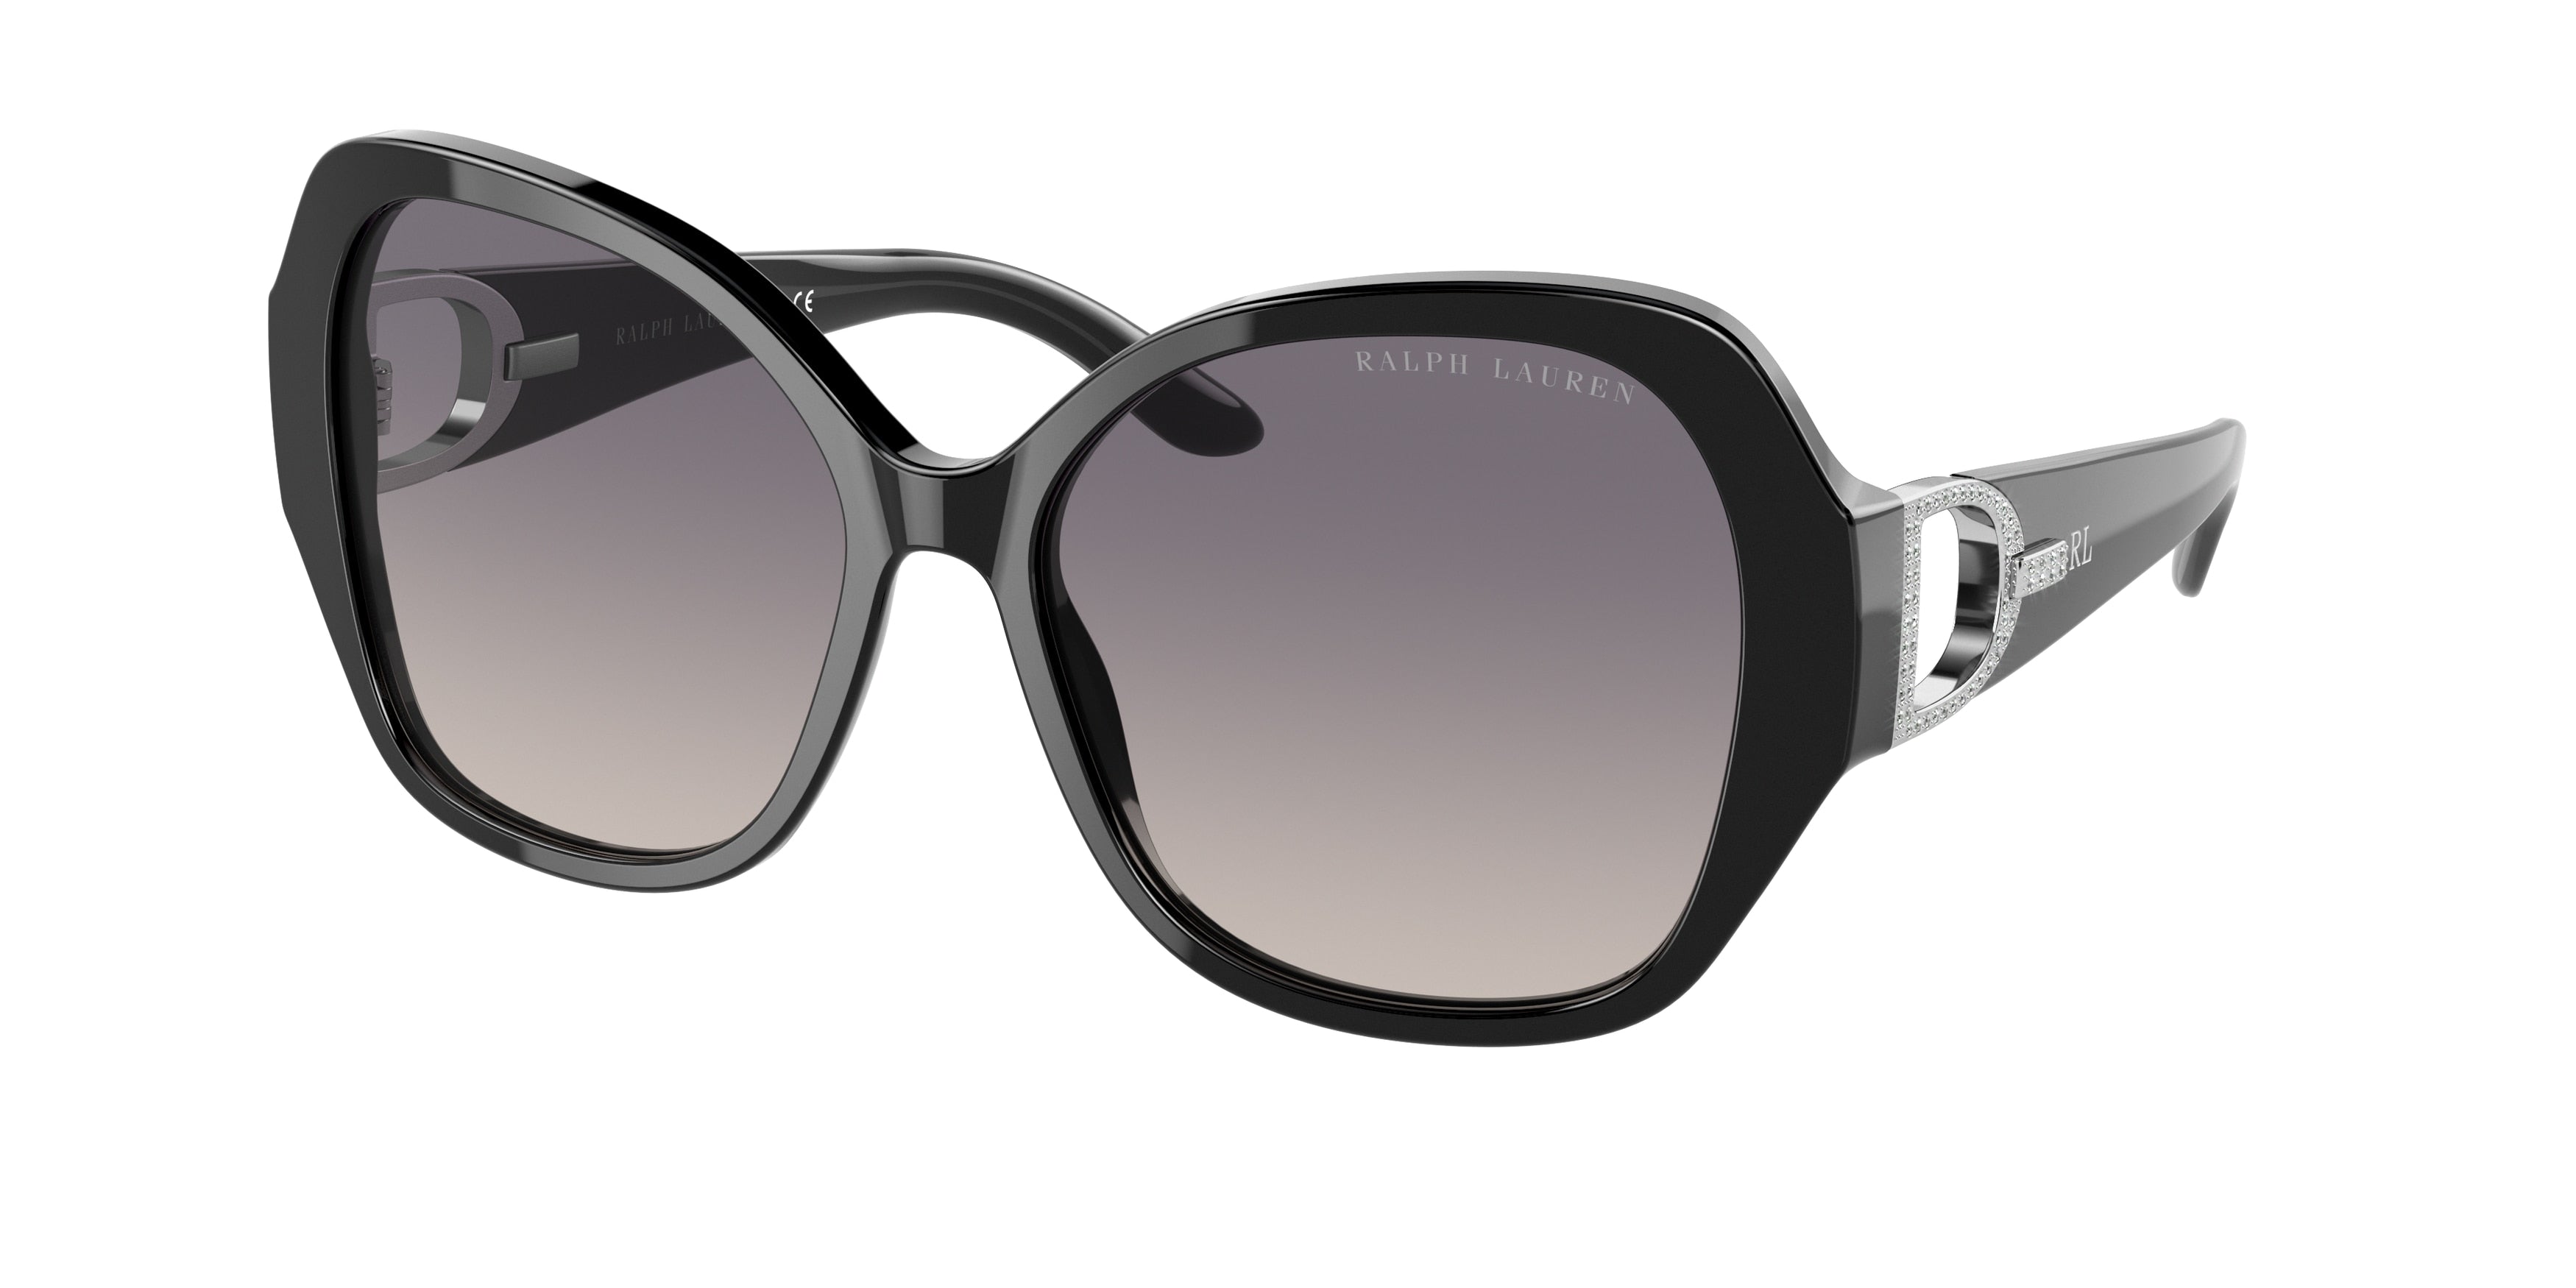 Ralph Lauren RL8202B Butterfly Sunglasses  5001V6-Shiny Black 57-140-16 - Color Map Black